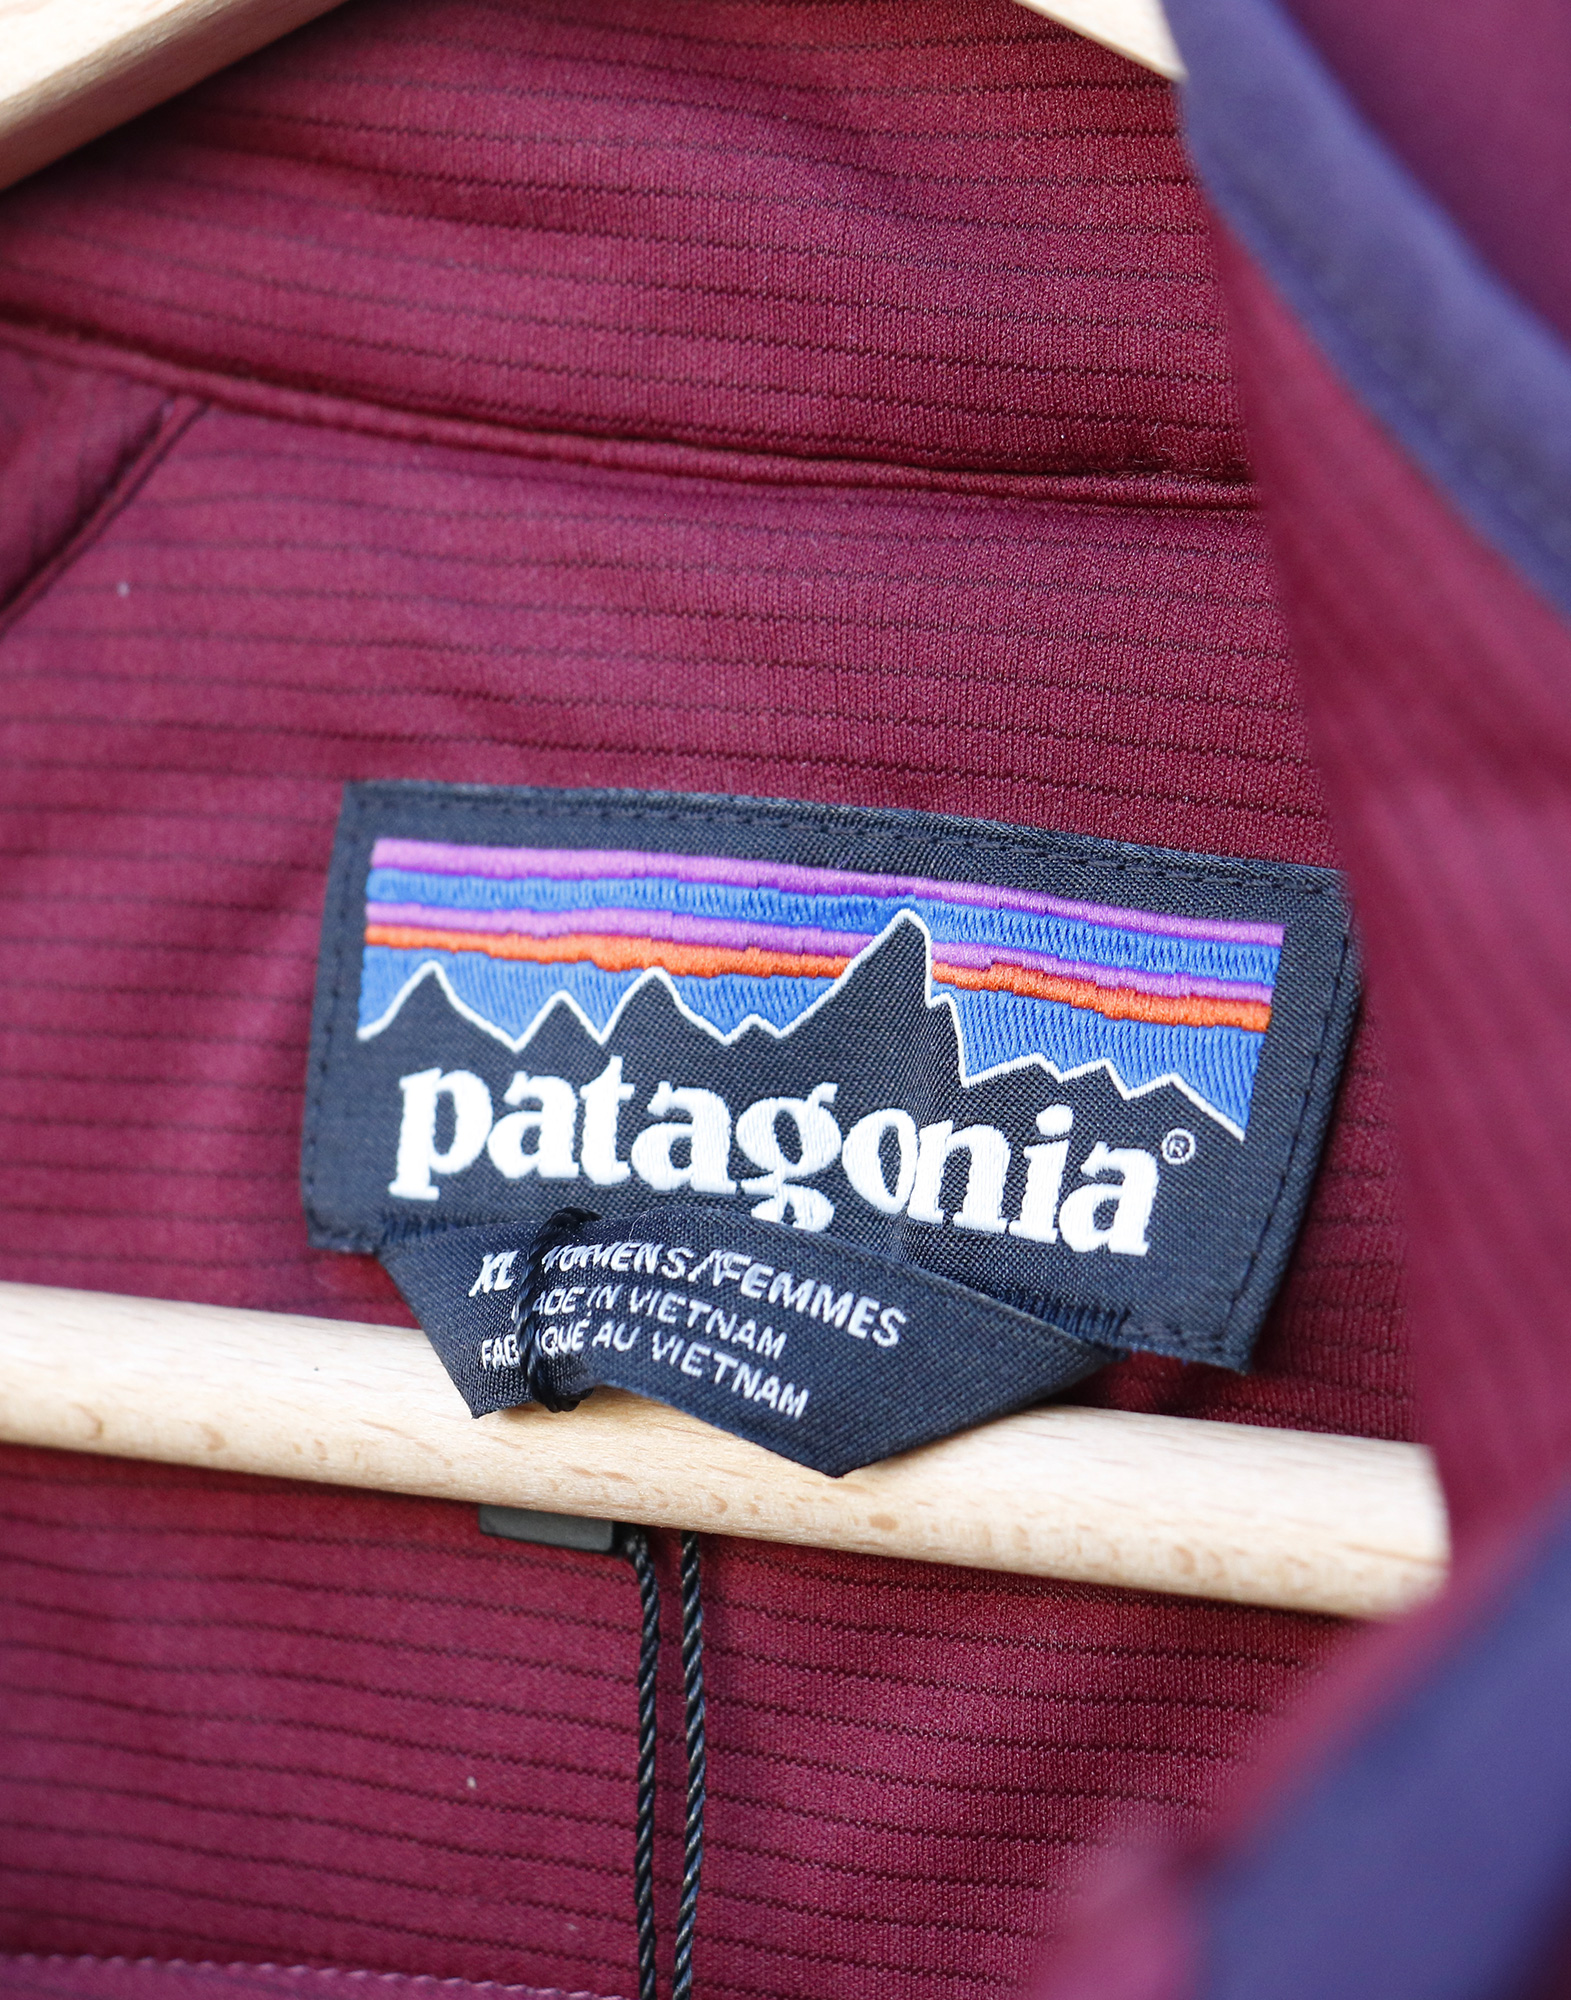 Patagonia - Giubbotto in poliestere riciclato